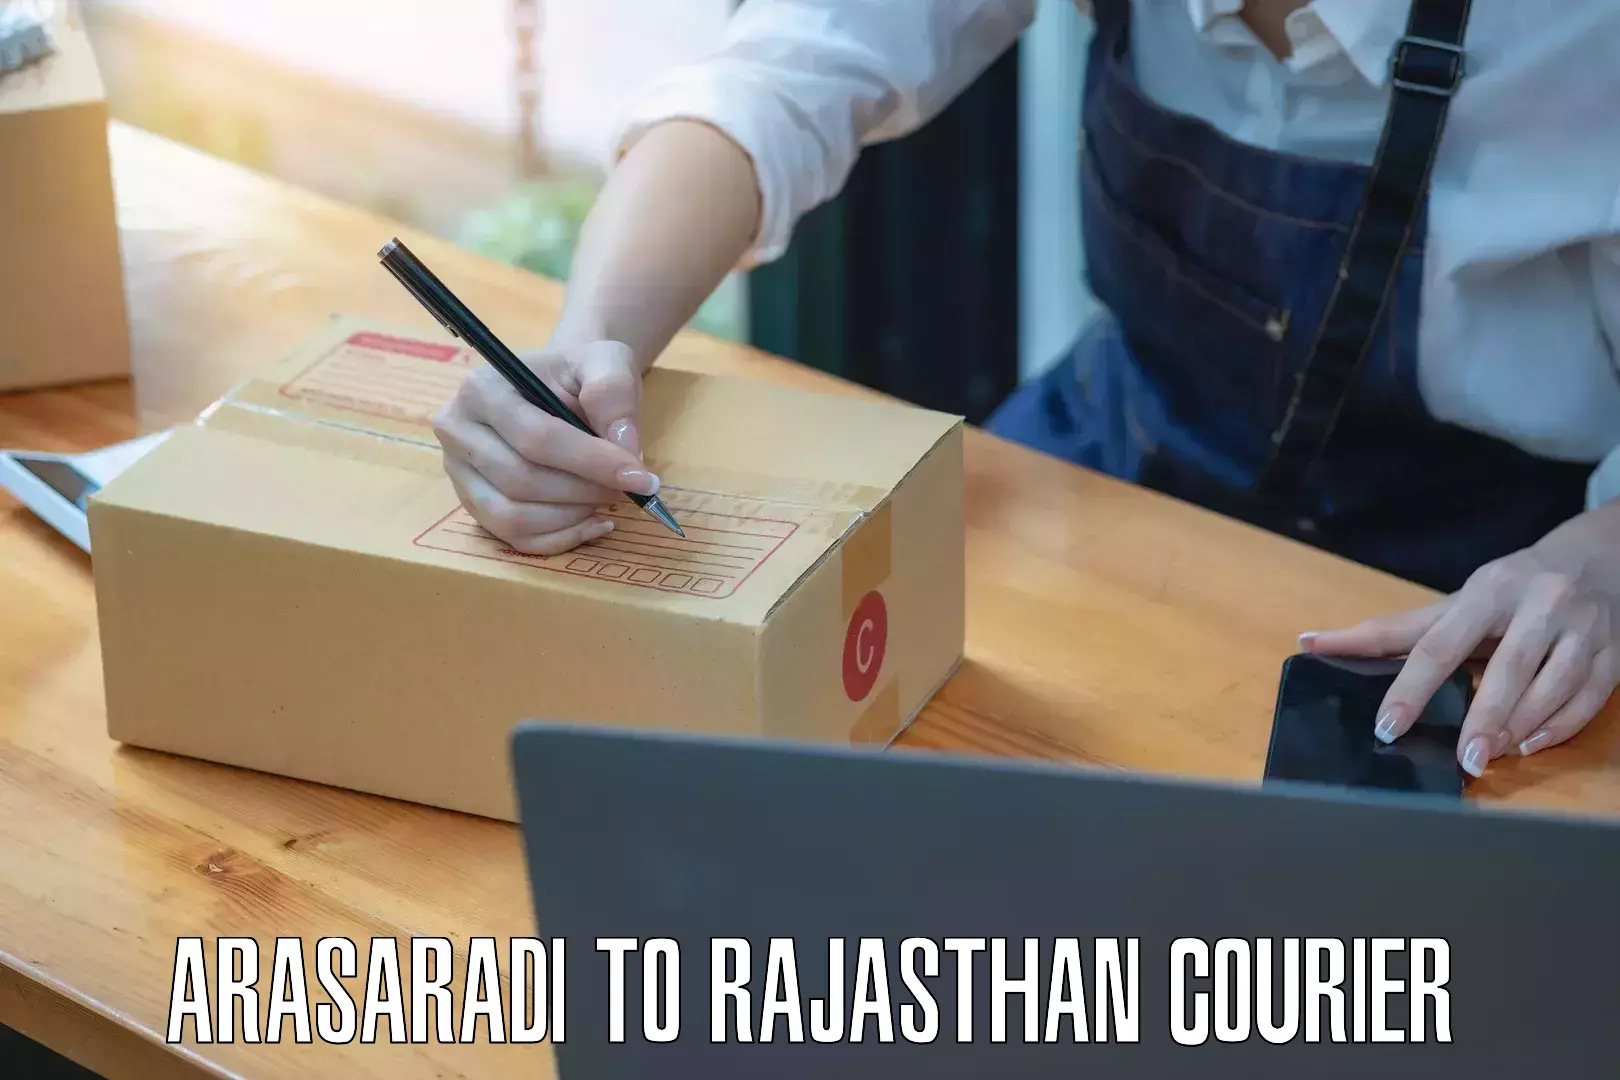 Expedited shipping methods Arasaradi to Rajasthan